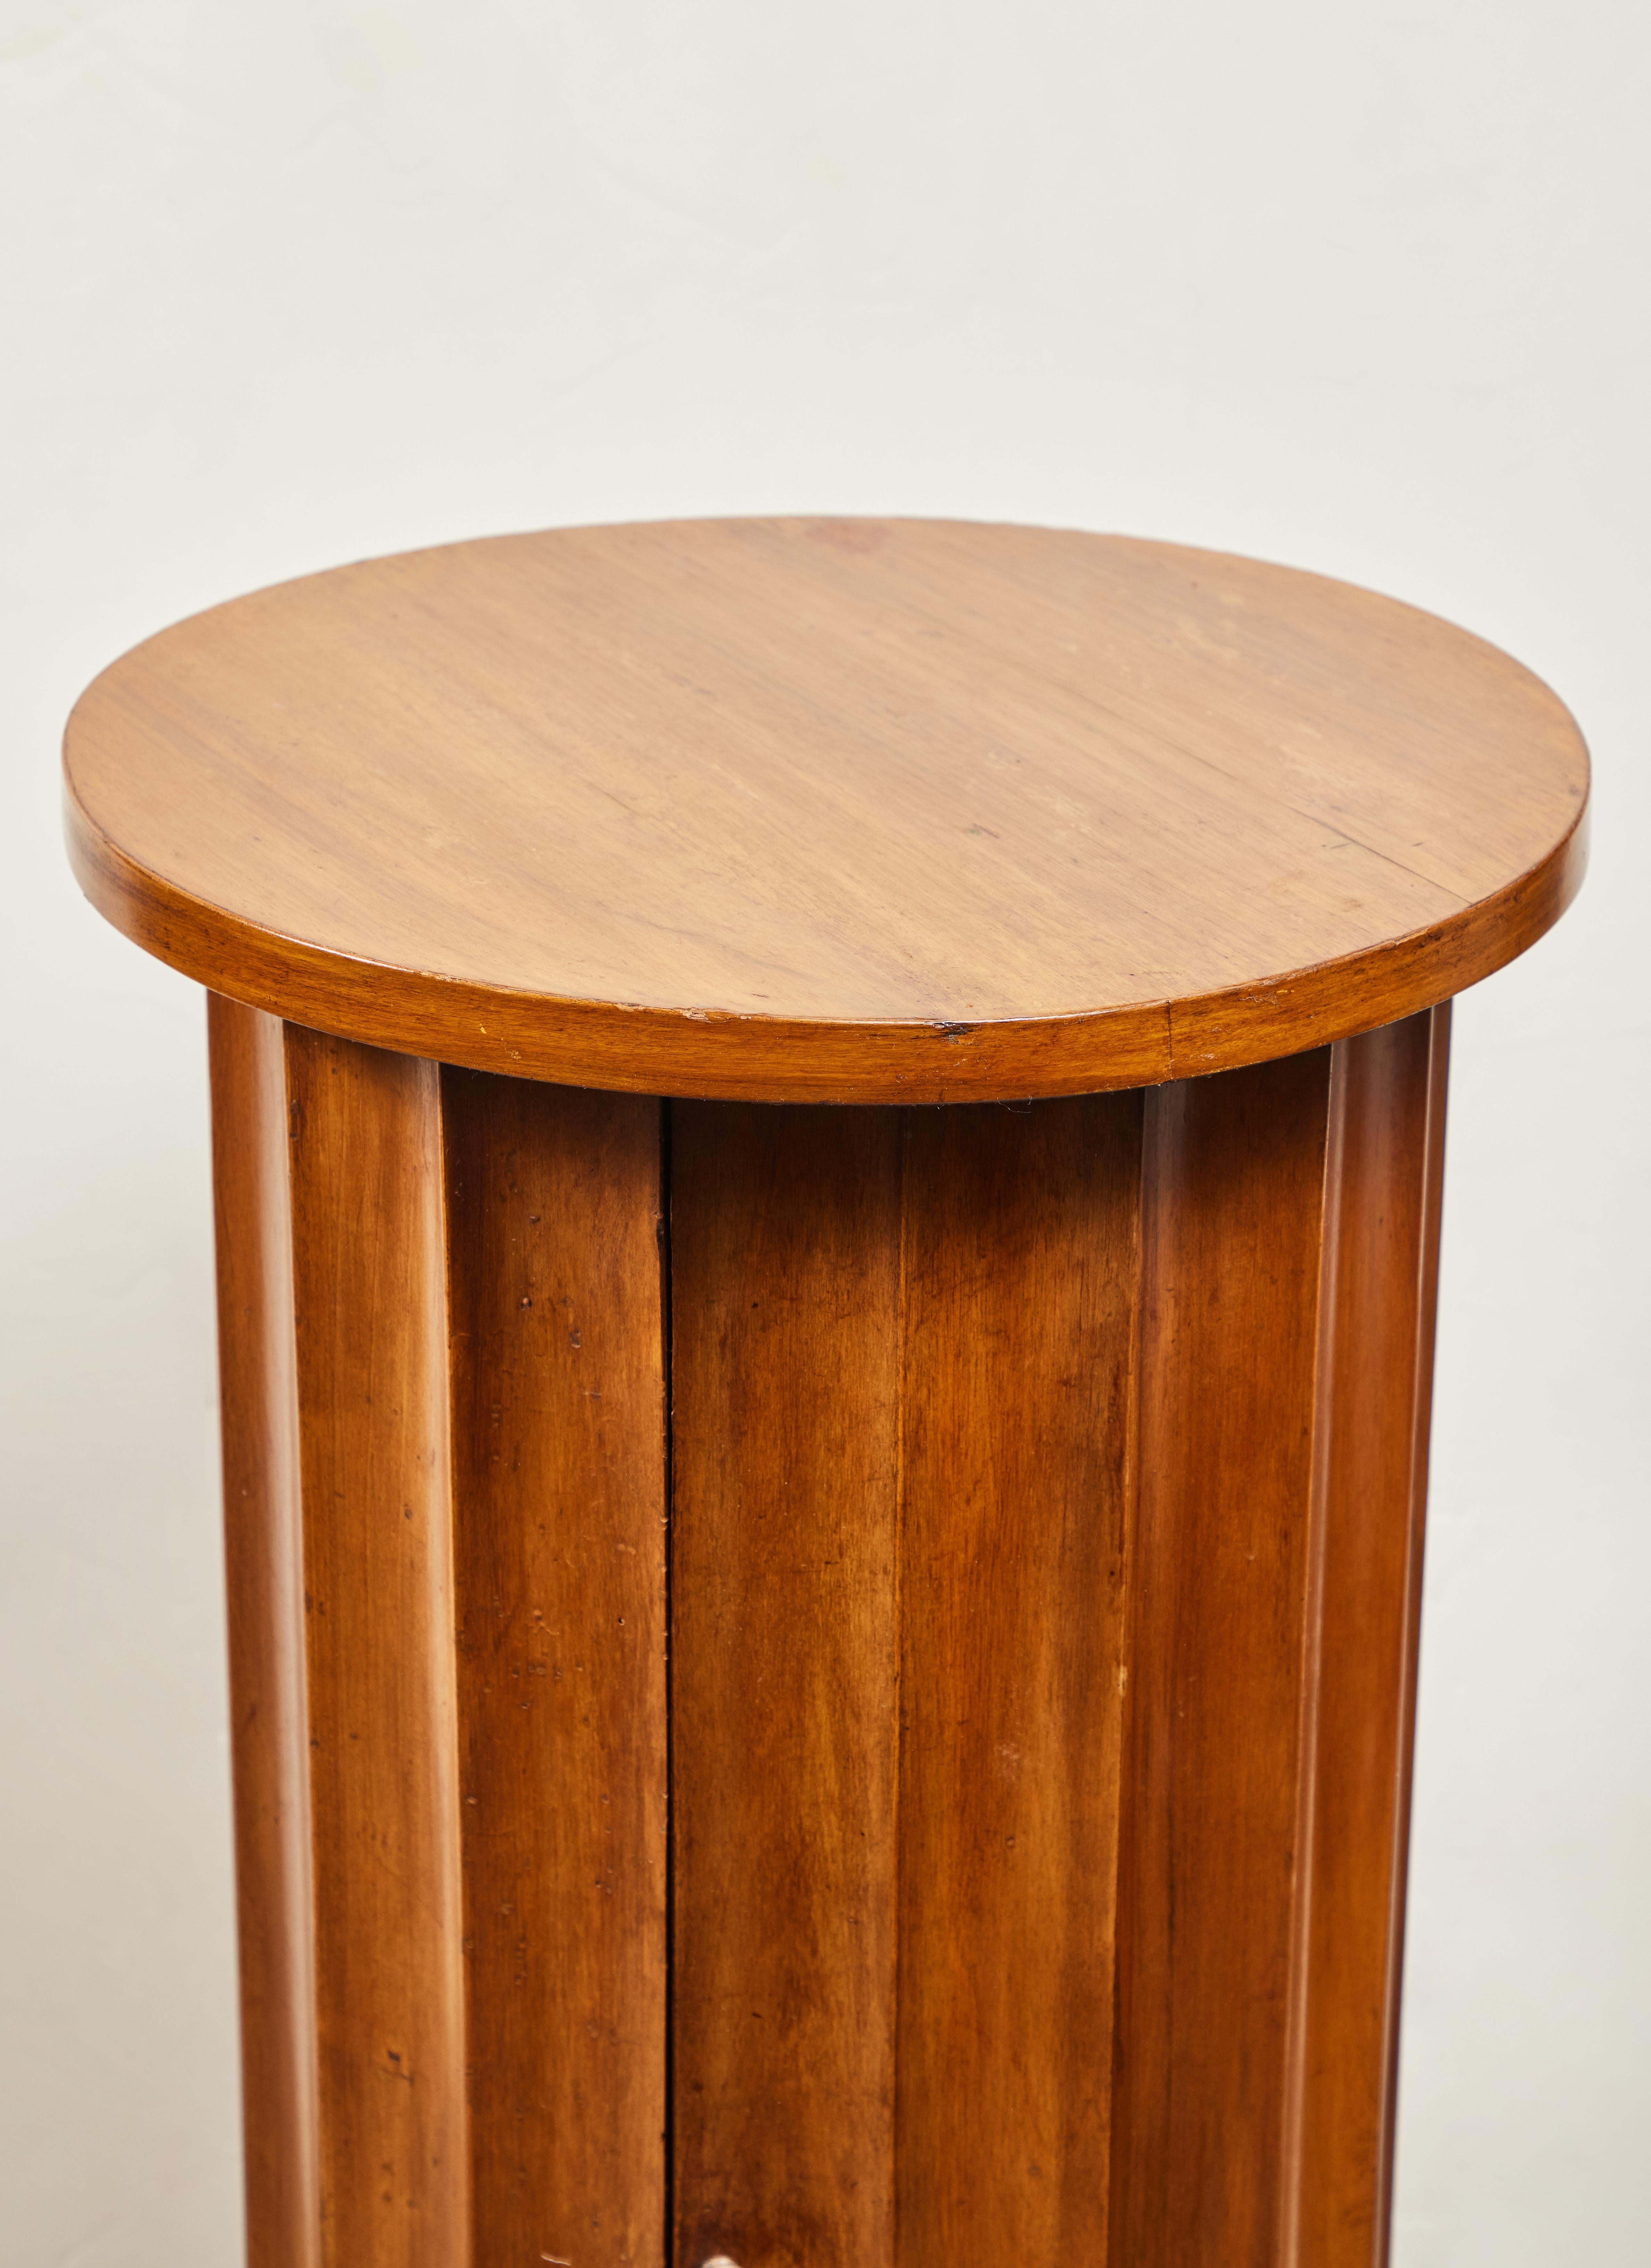 Carved Fluted Pedestal Table For Sale